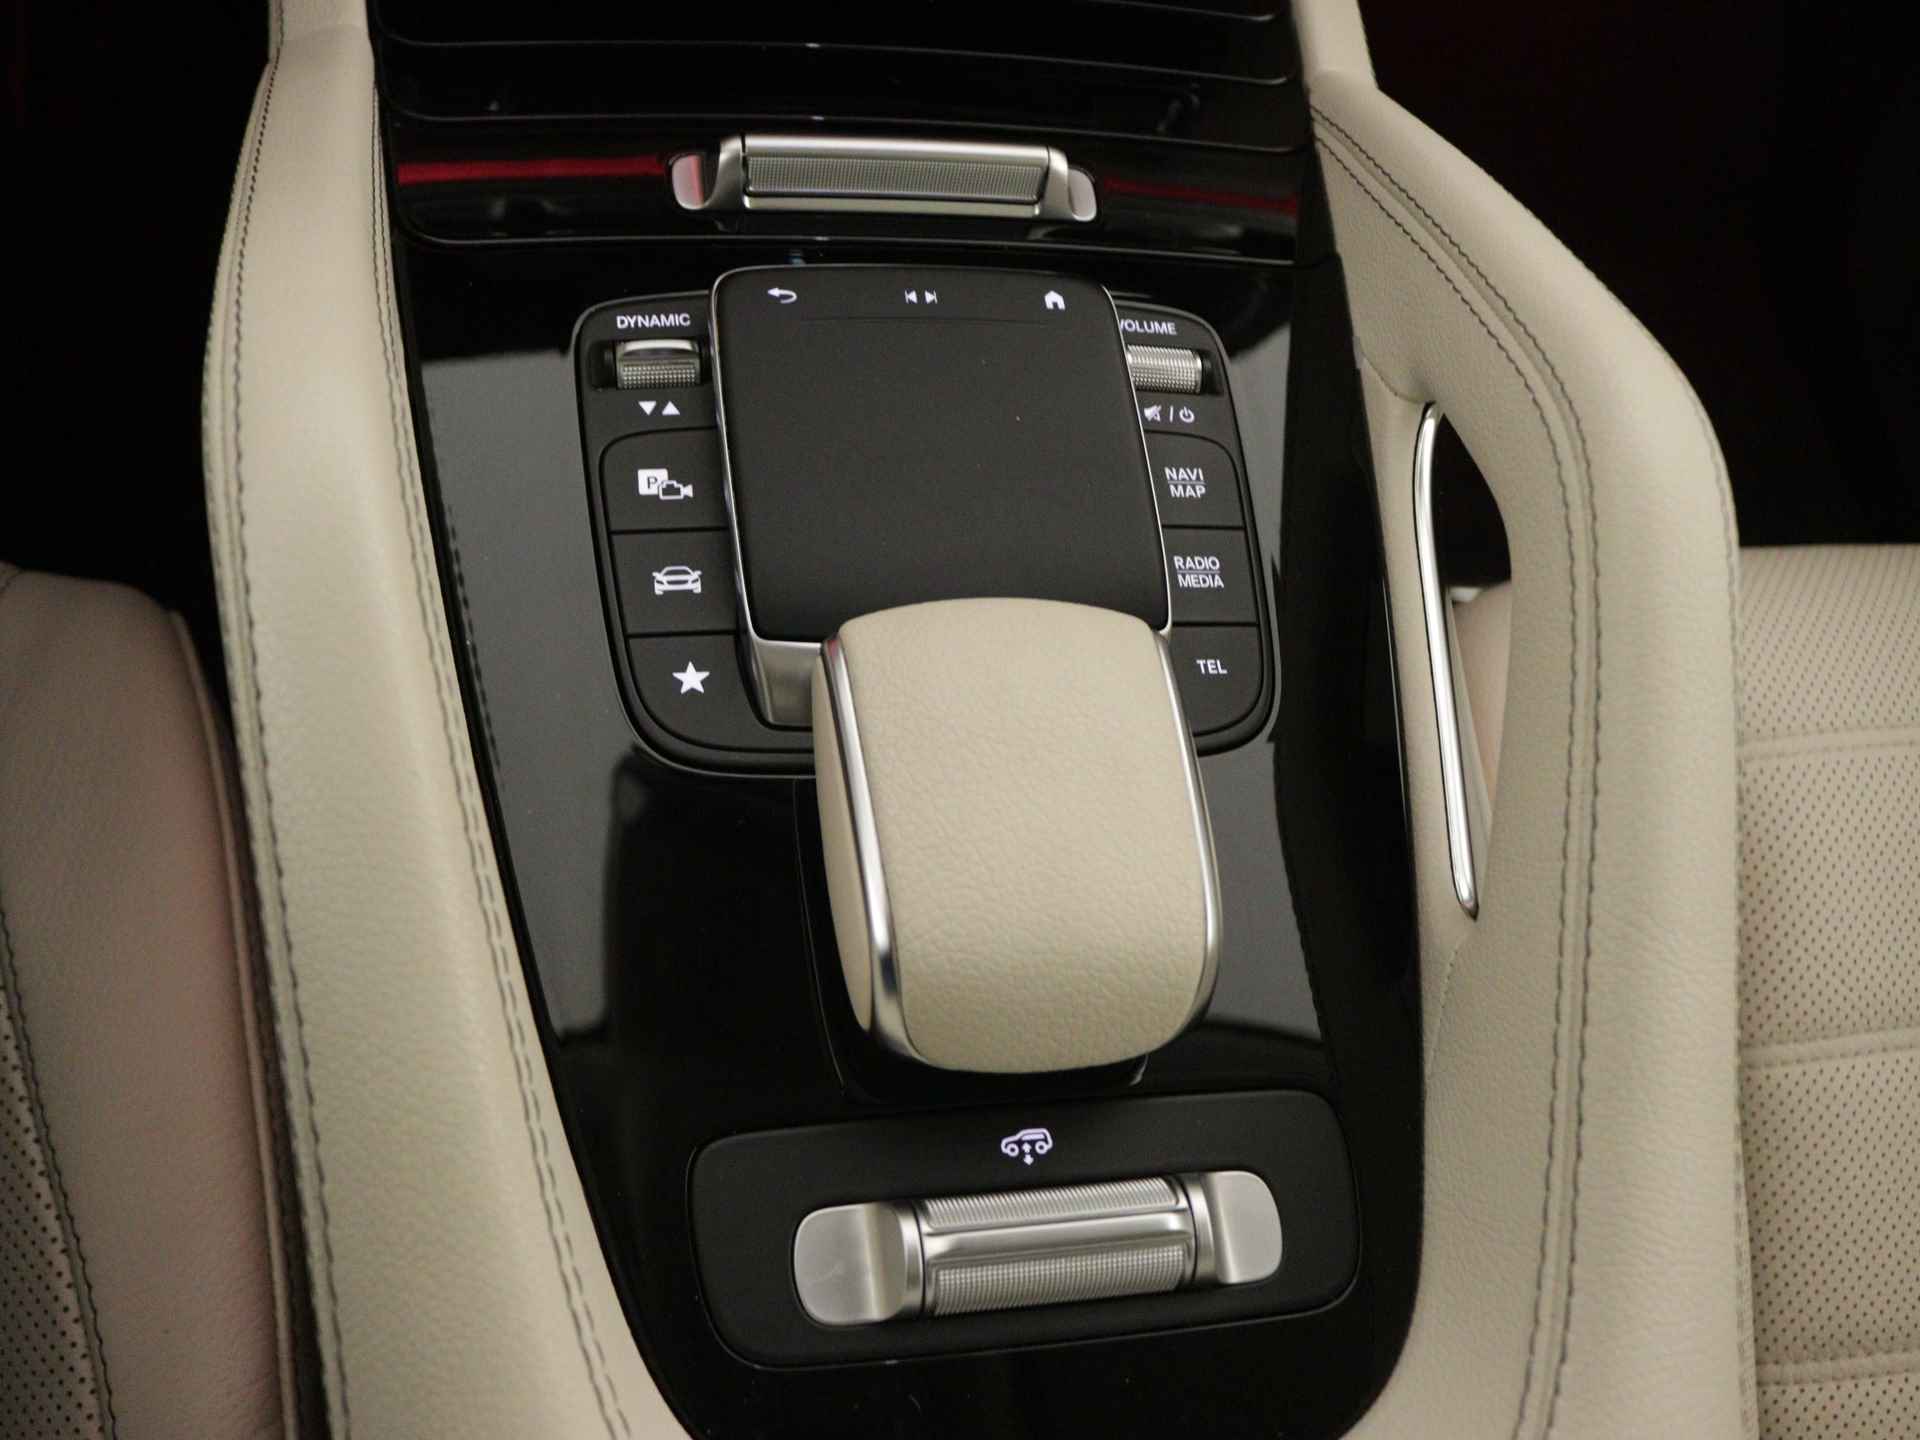 Mercedes-Benz GLE 450 4MATIC AMG Line Premium | Panoramadak | Luchtvering | Burmester | Navigatie | MBUX wide screen | Alarm klasse 3 | Parking support | inclusief 24 maanden MB Certified garantie voor europa - 11/39